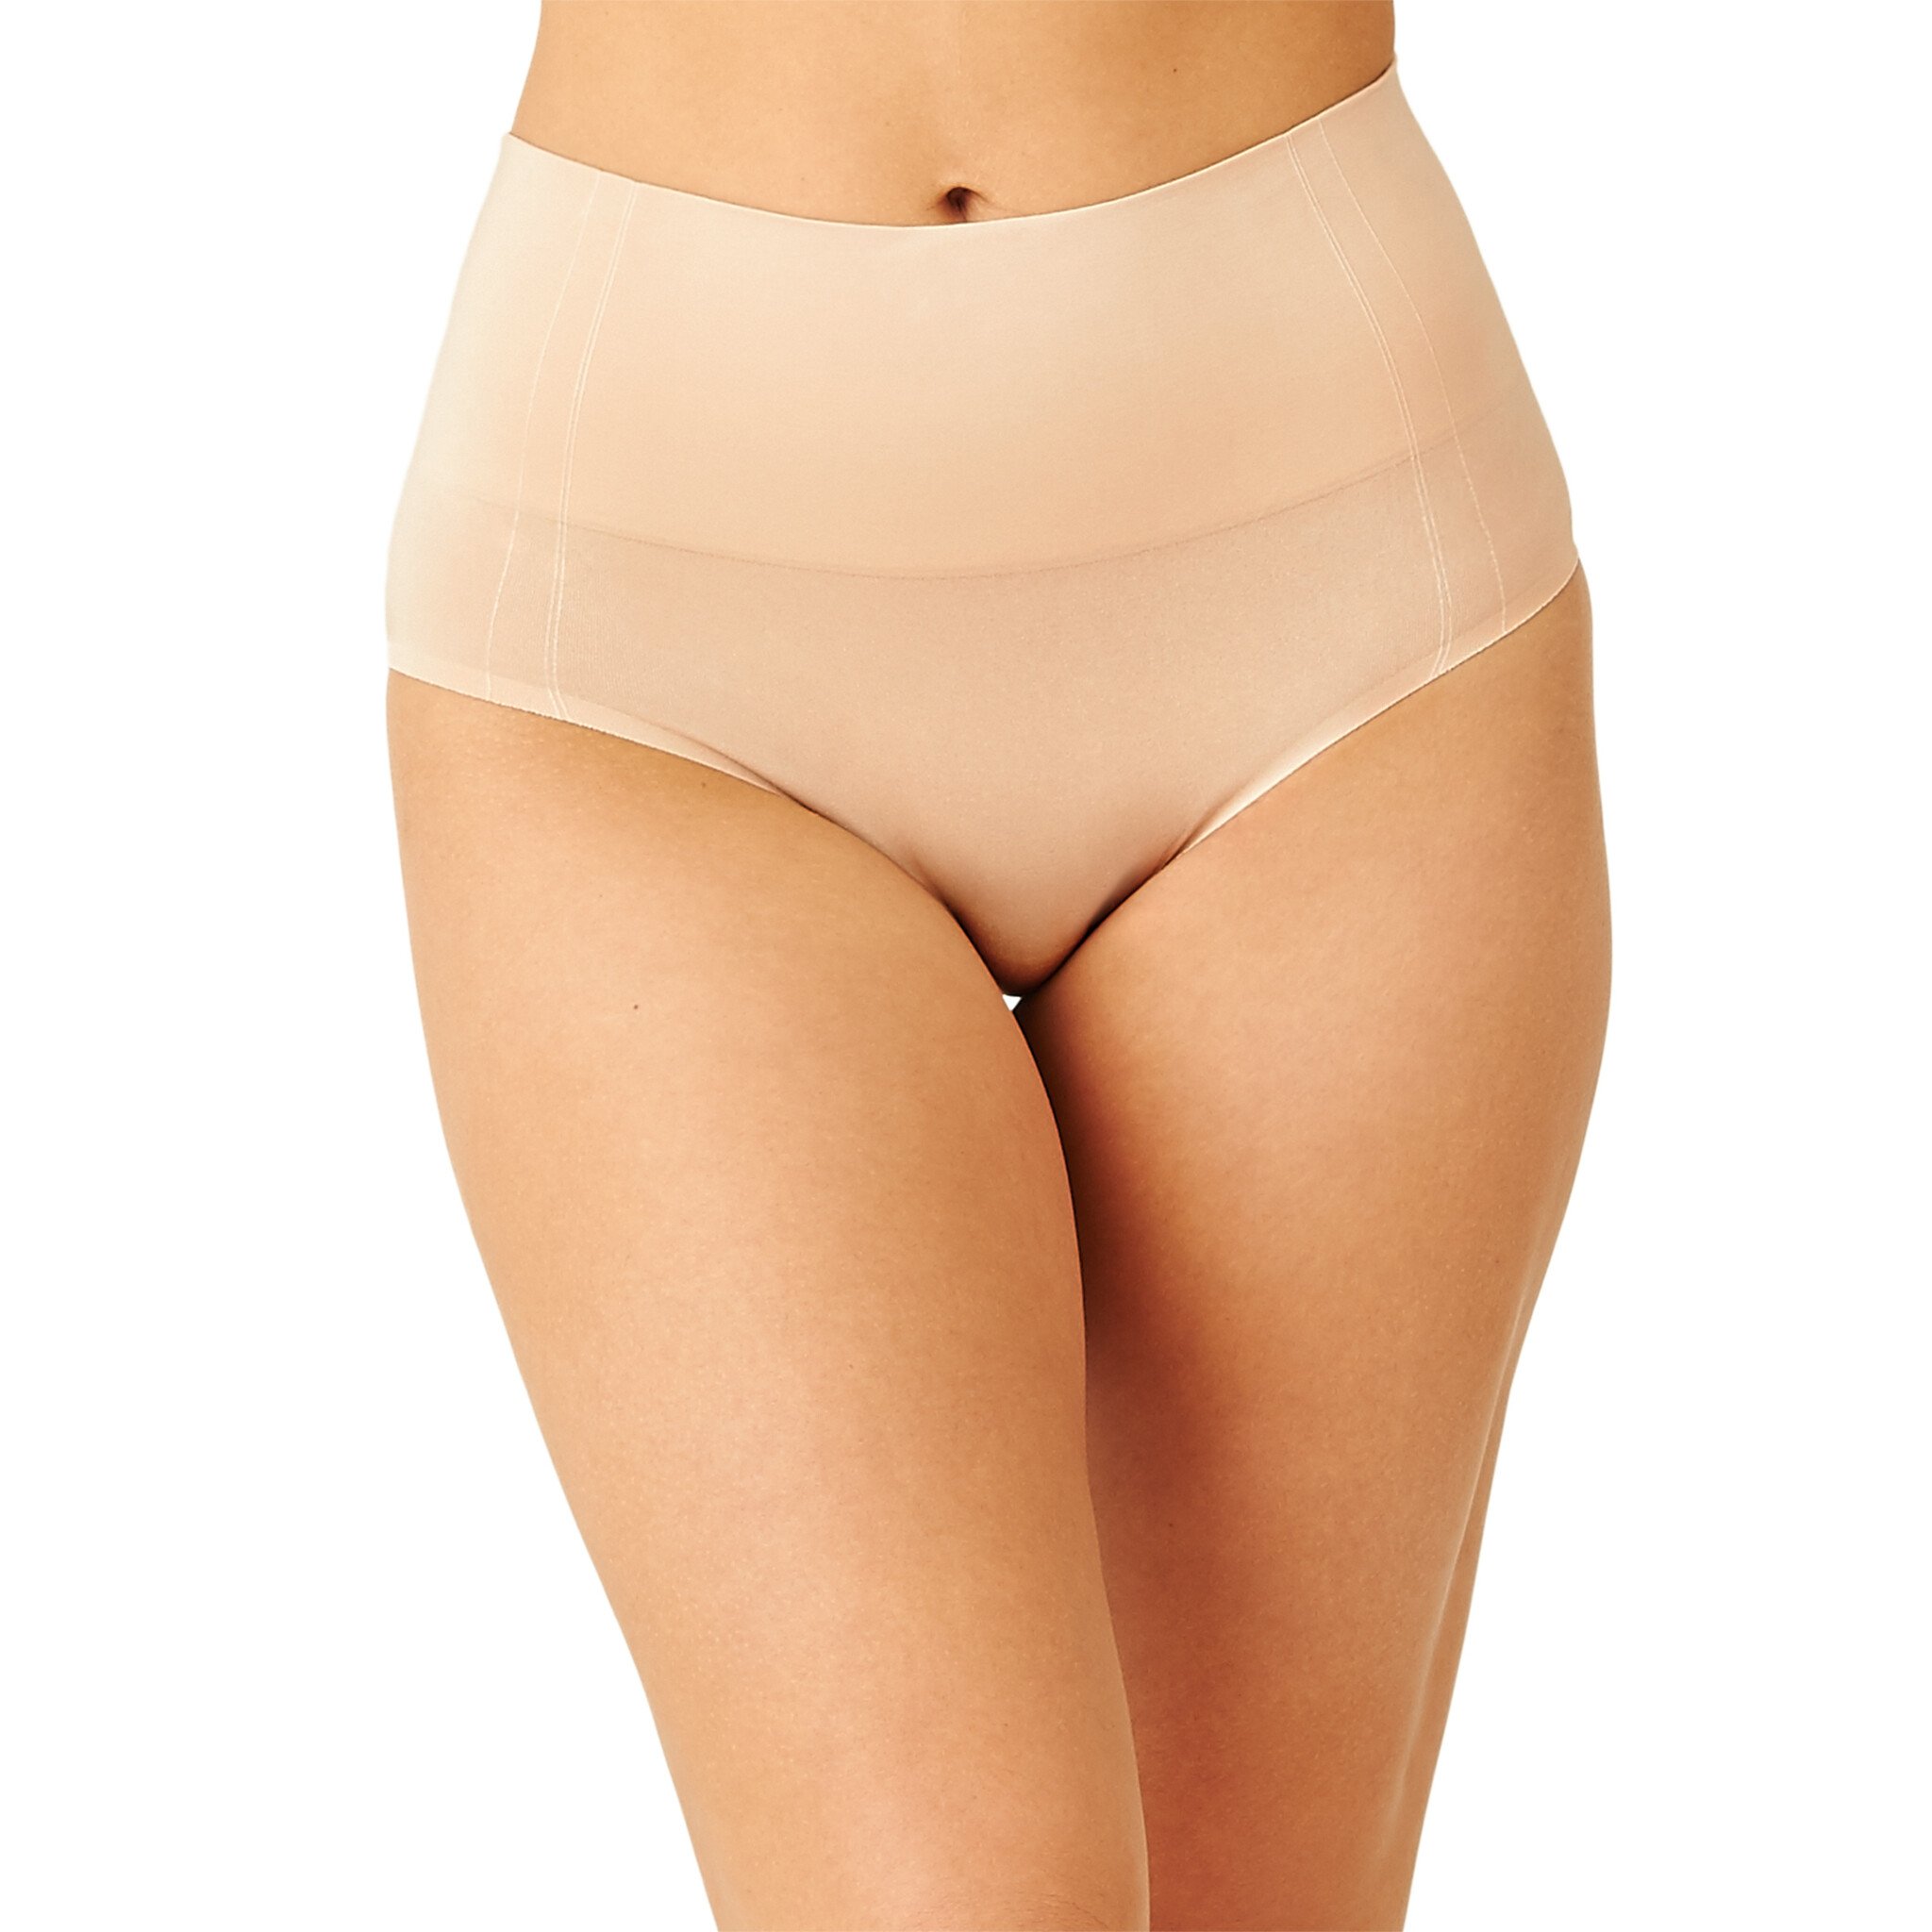 Women's panty girdle Wacoal Beauty secret